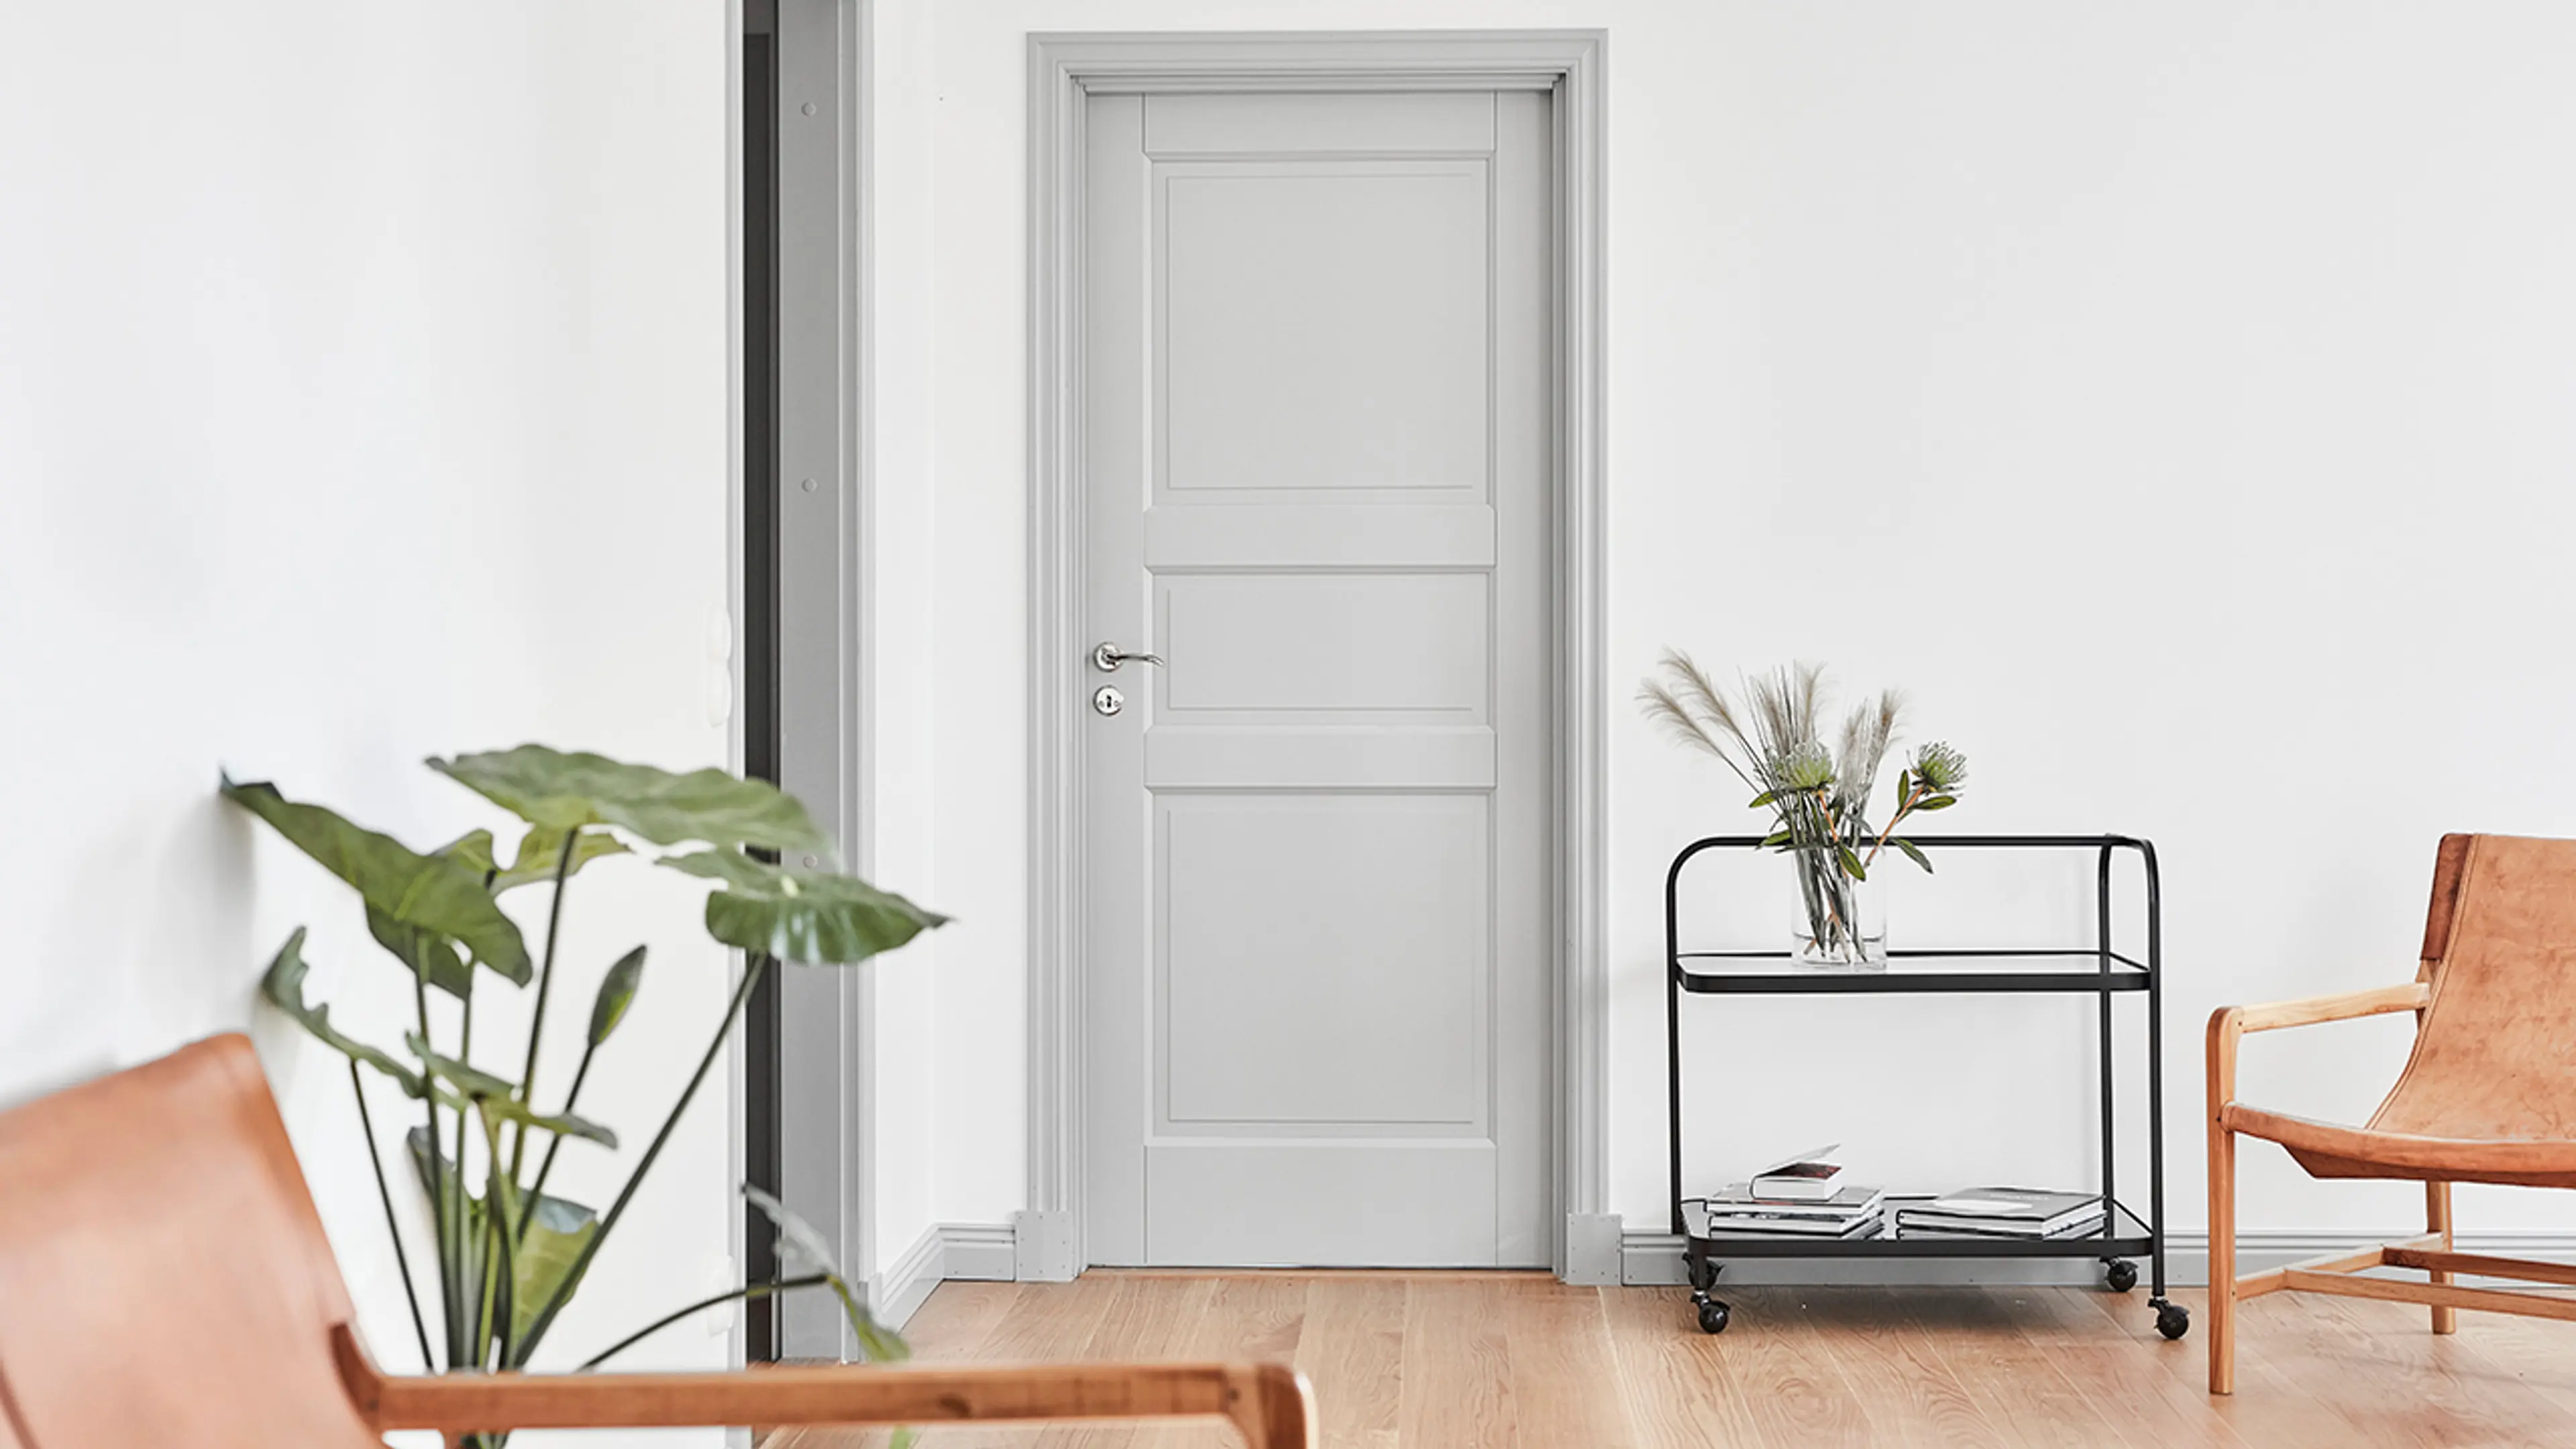 Lys grå innerdør med profil i stue med skinnstoler og trillebord.